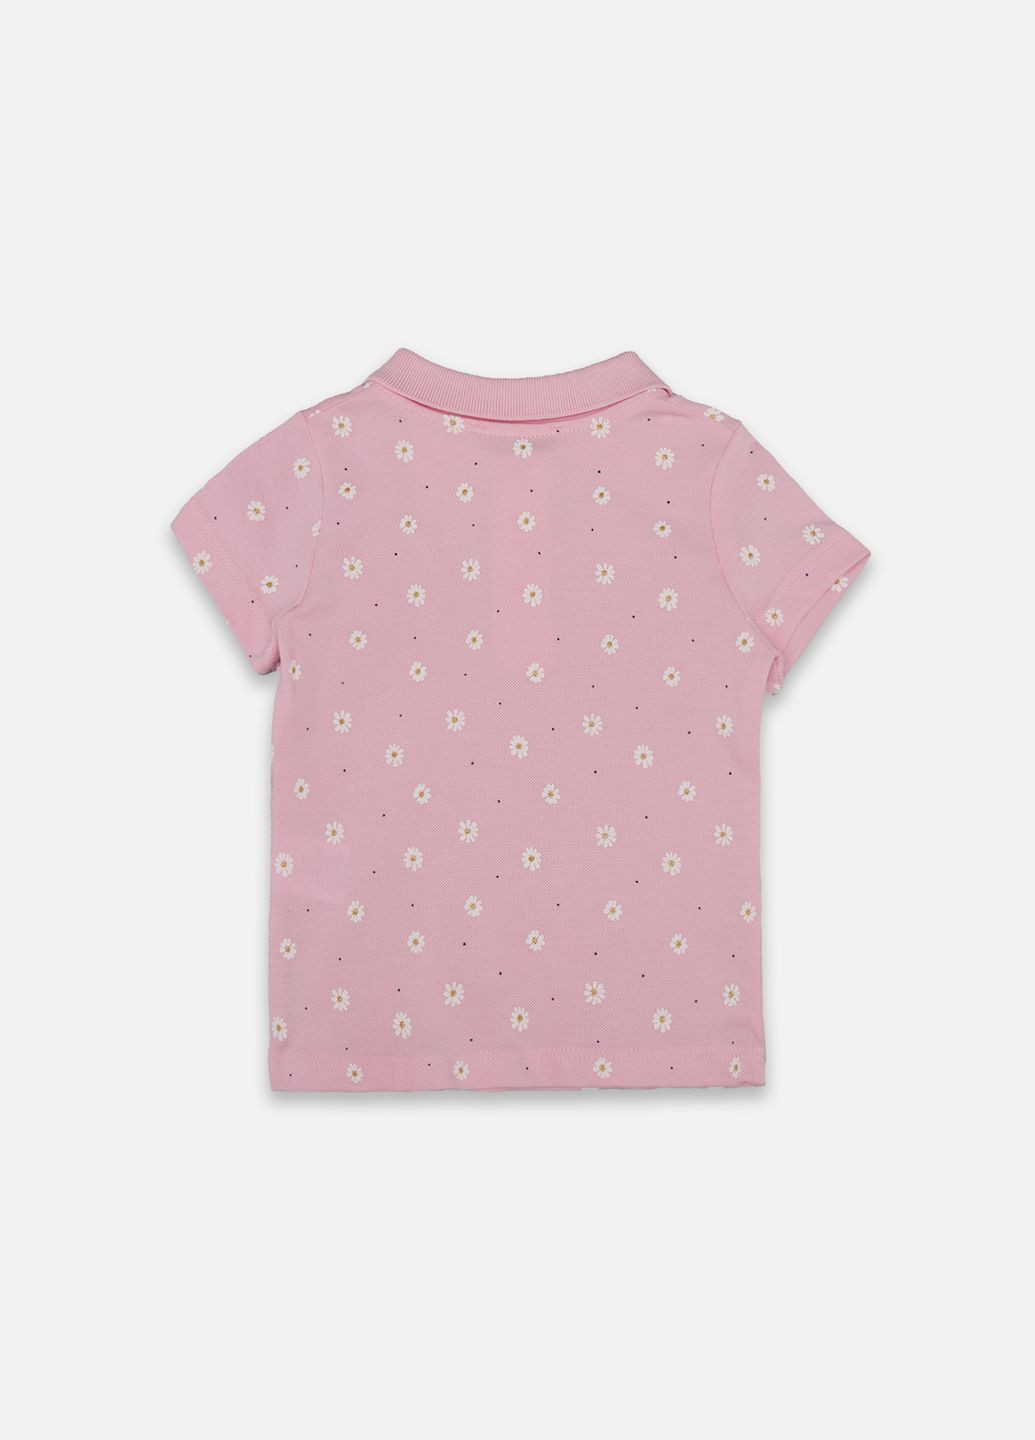 Розовая детская футболка-футболка-поло с коротким рукавом для девочки цвет розовый цб-00247470 для девочки Pengim